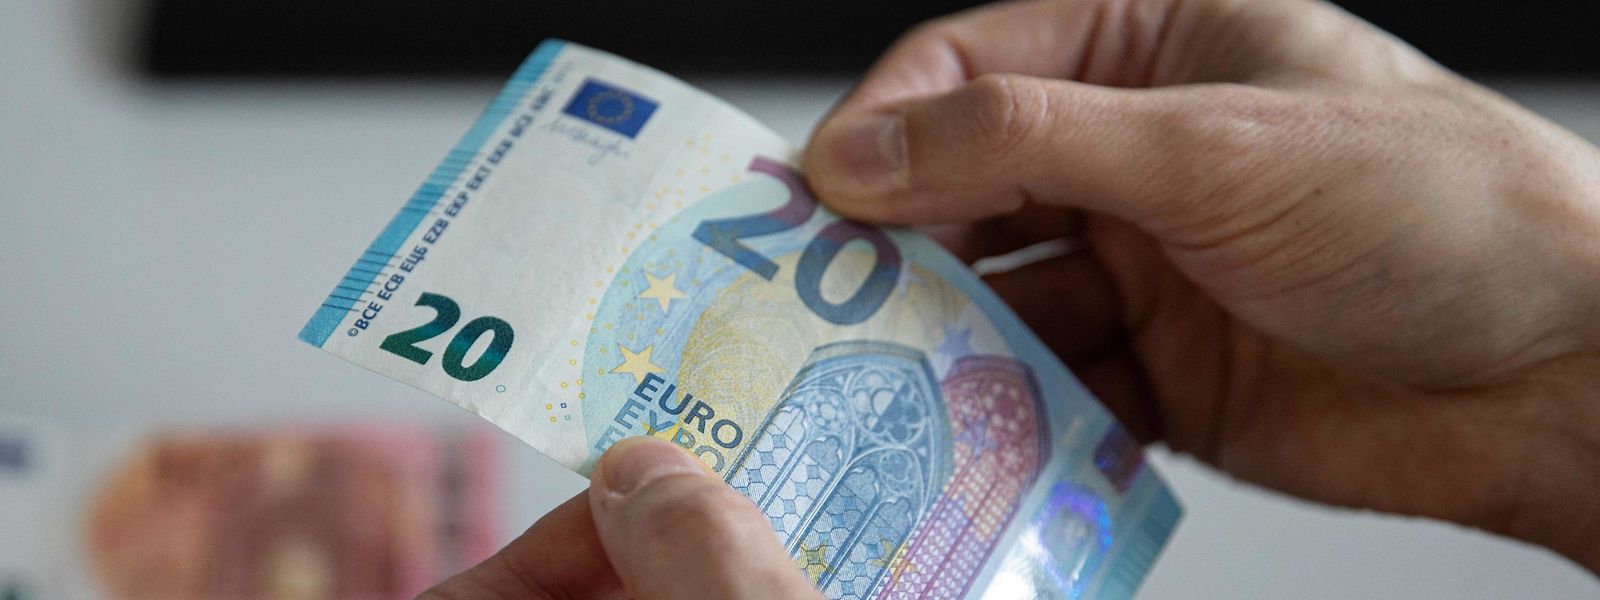 Plus de 340 millions de personnes utilisent aujourd'hui l'euro.